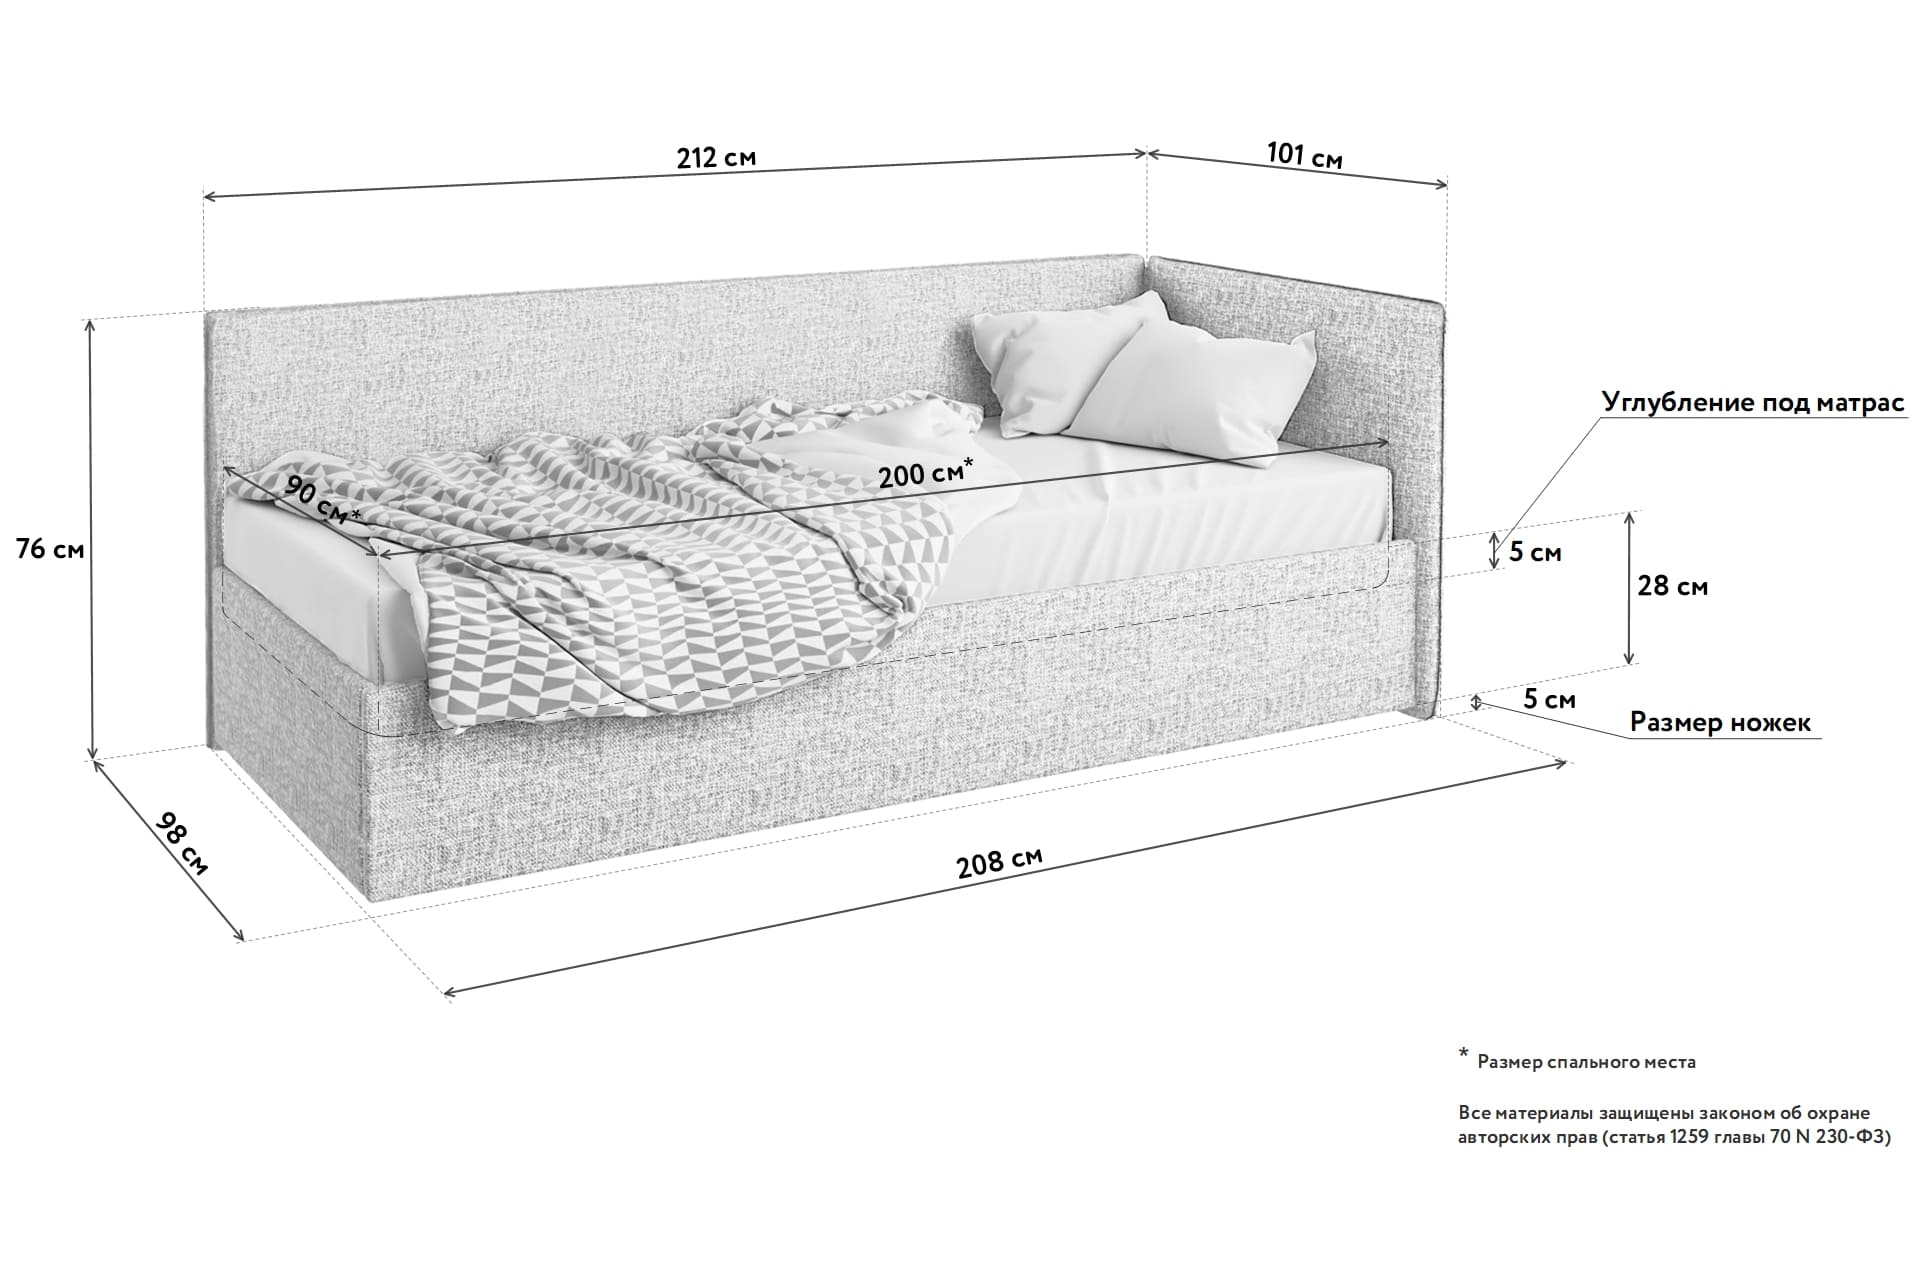 размер полуторной кровати стандарт в см высота ширина